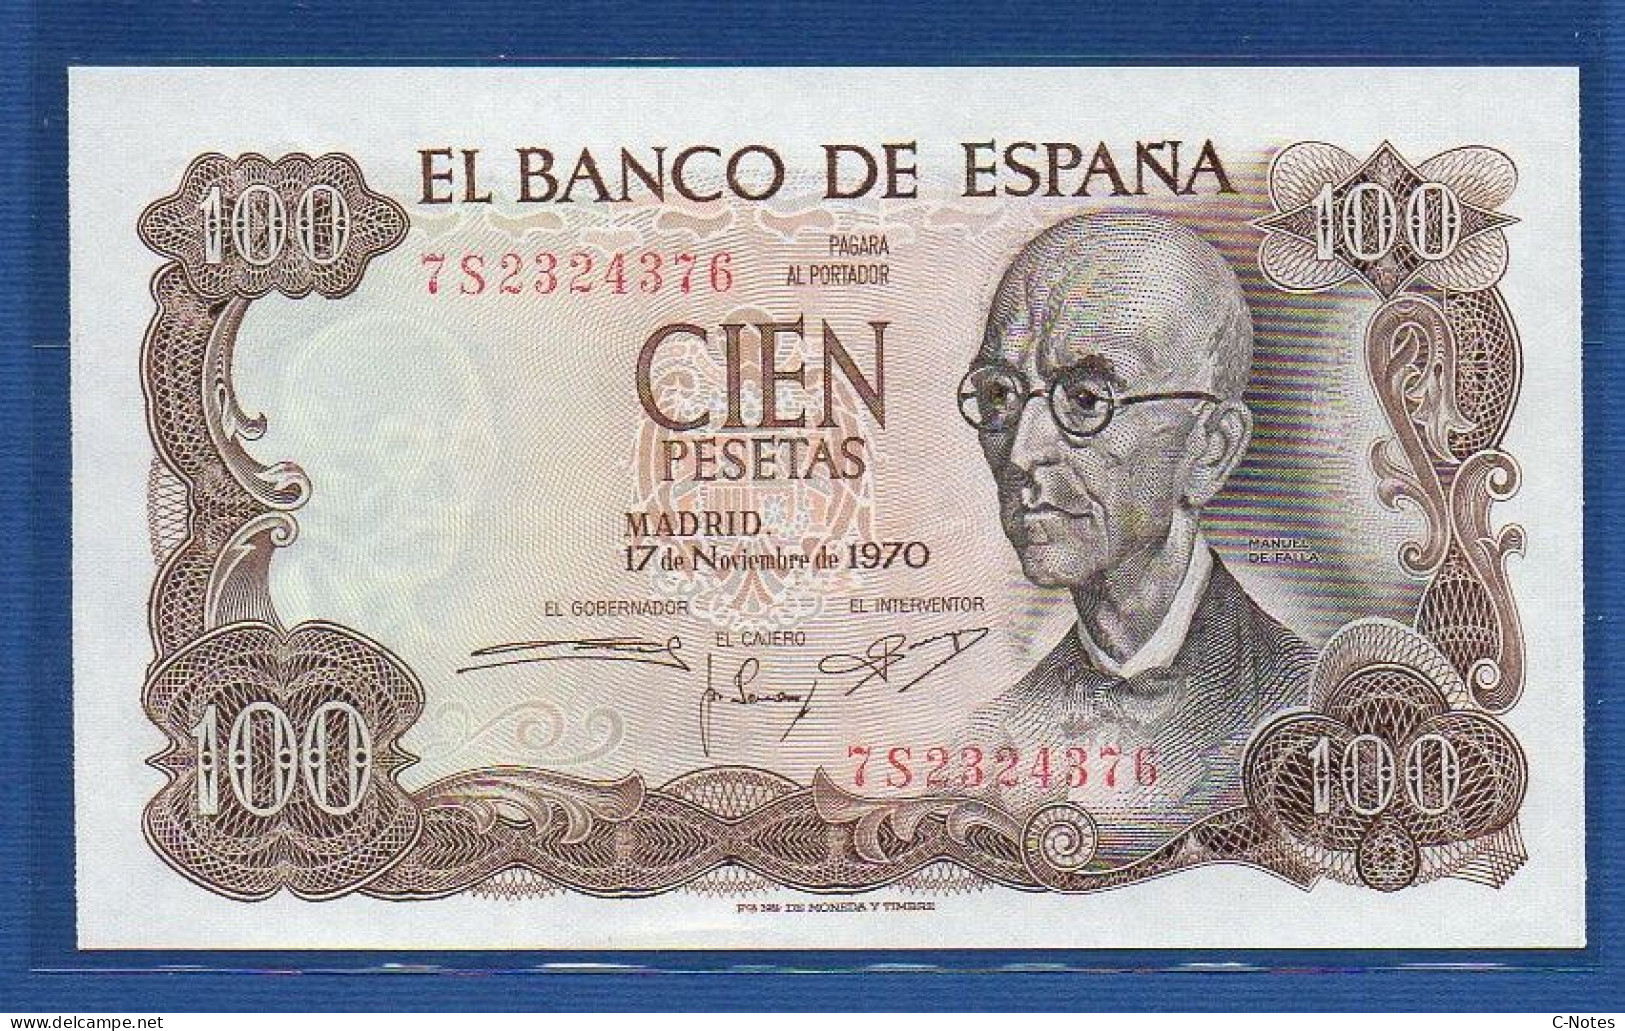 SPAIN - P.152 – 100 PESETAS 1970 UNC, S/n 7S2324376 - 100 Pesetas